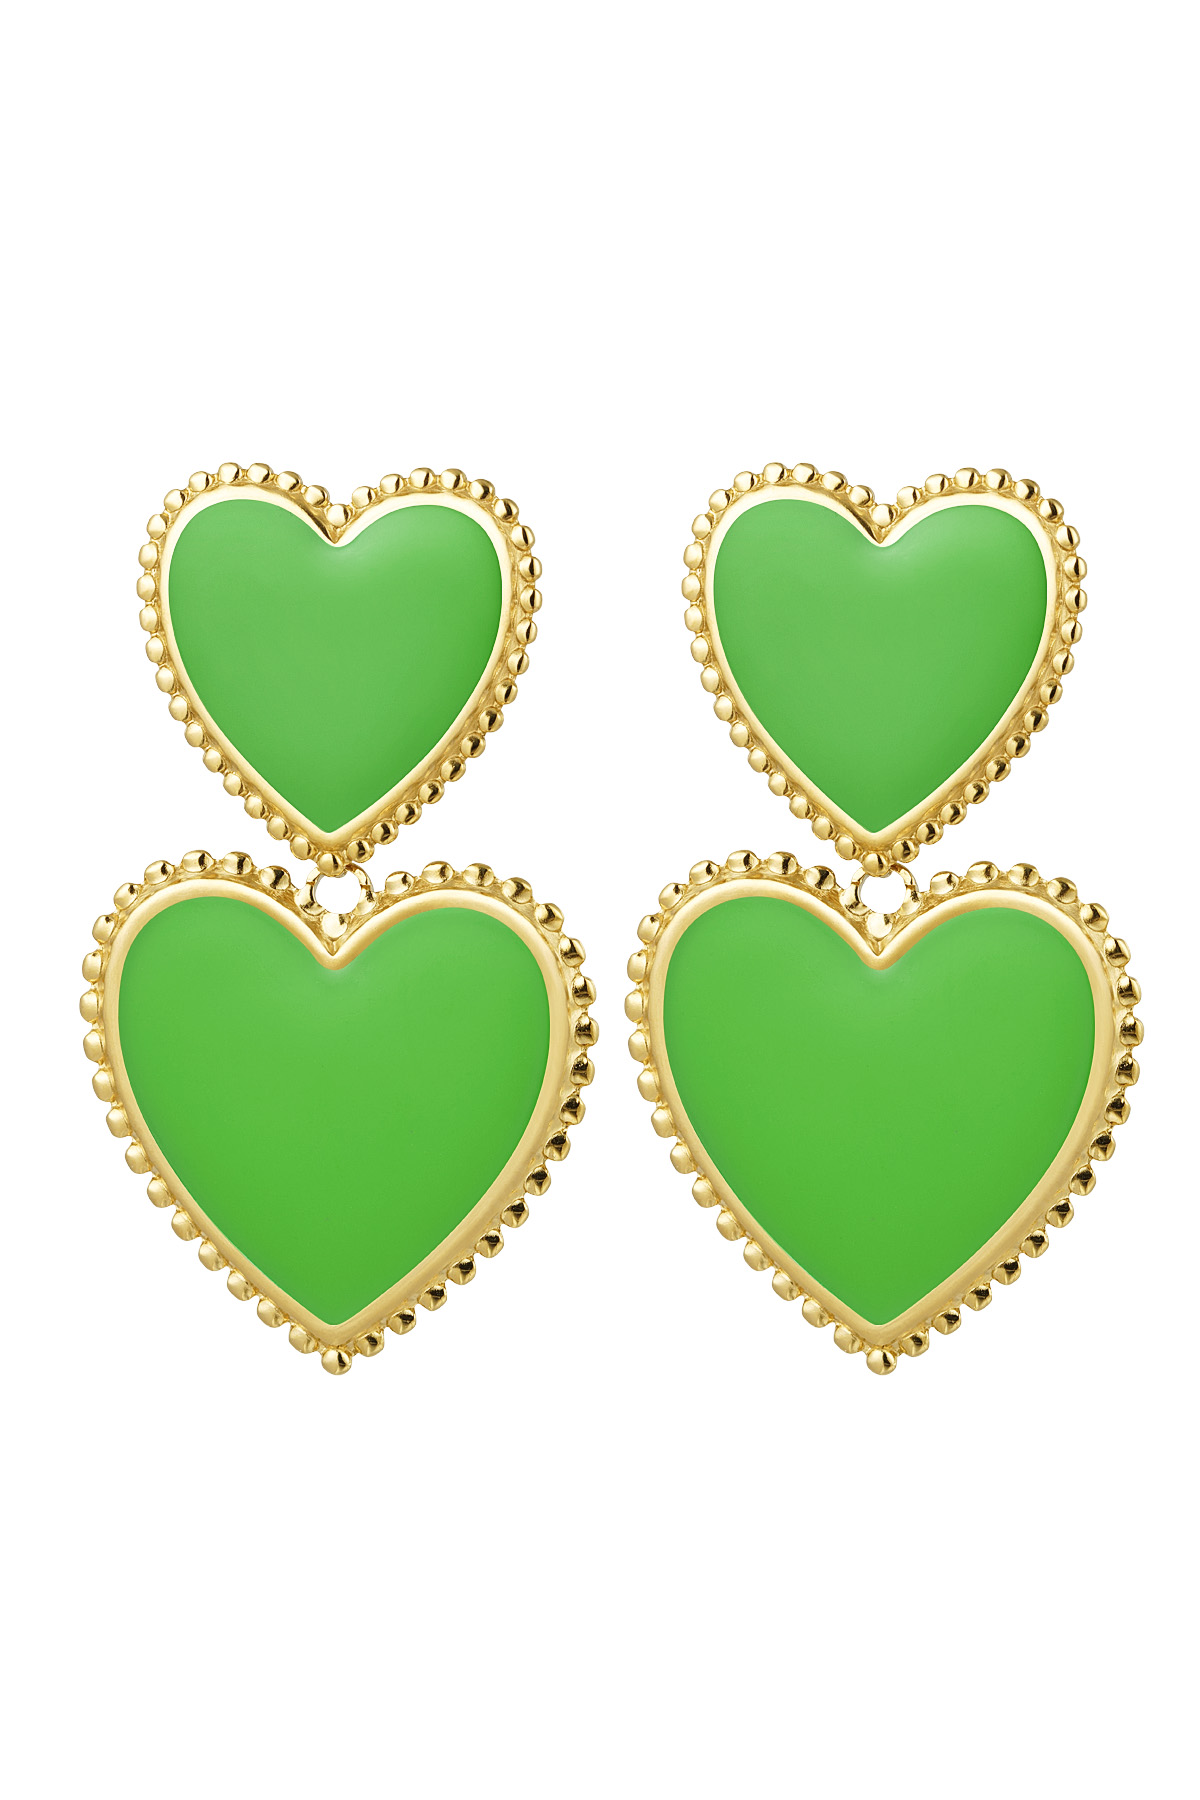 Boucles d'oreilles 2 x coeur - vert Vert & Or Acier inoxydable h5 